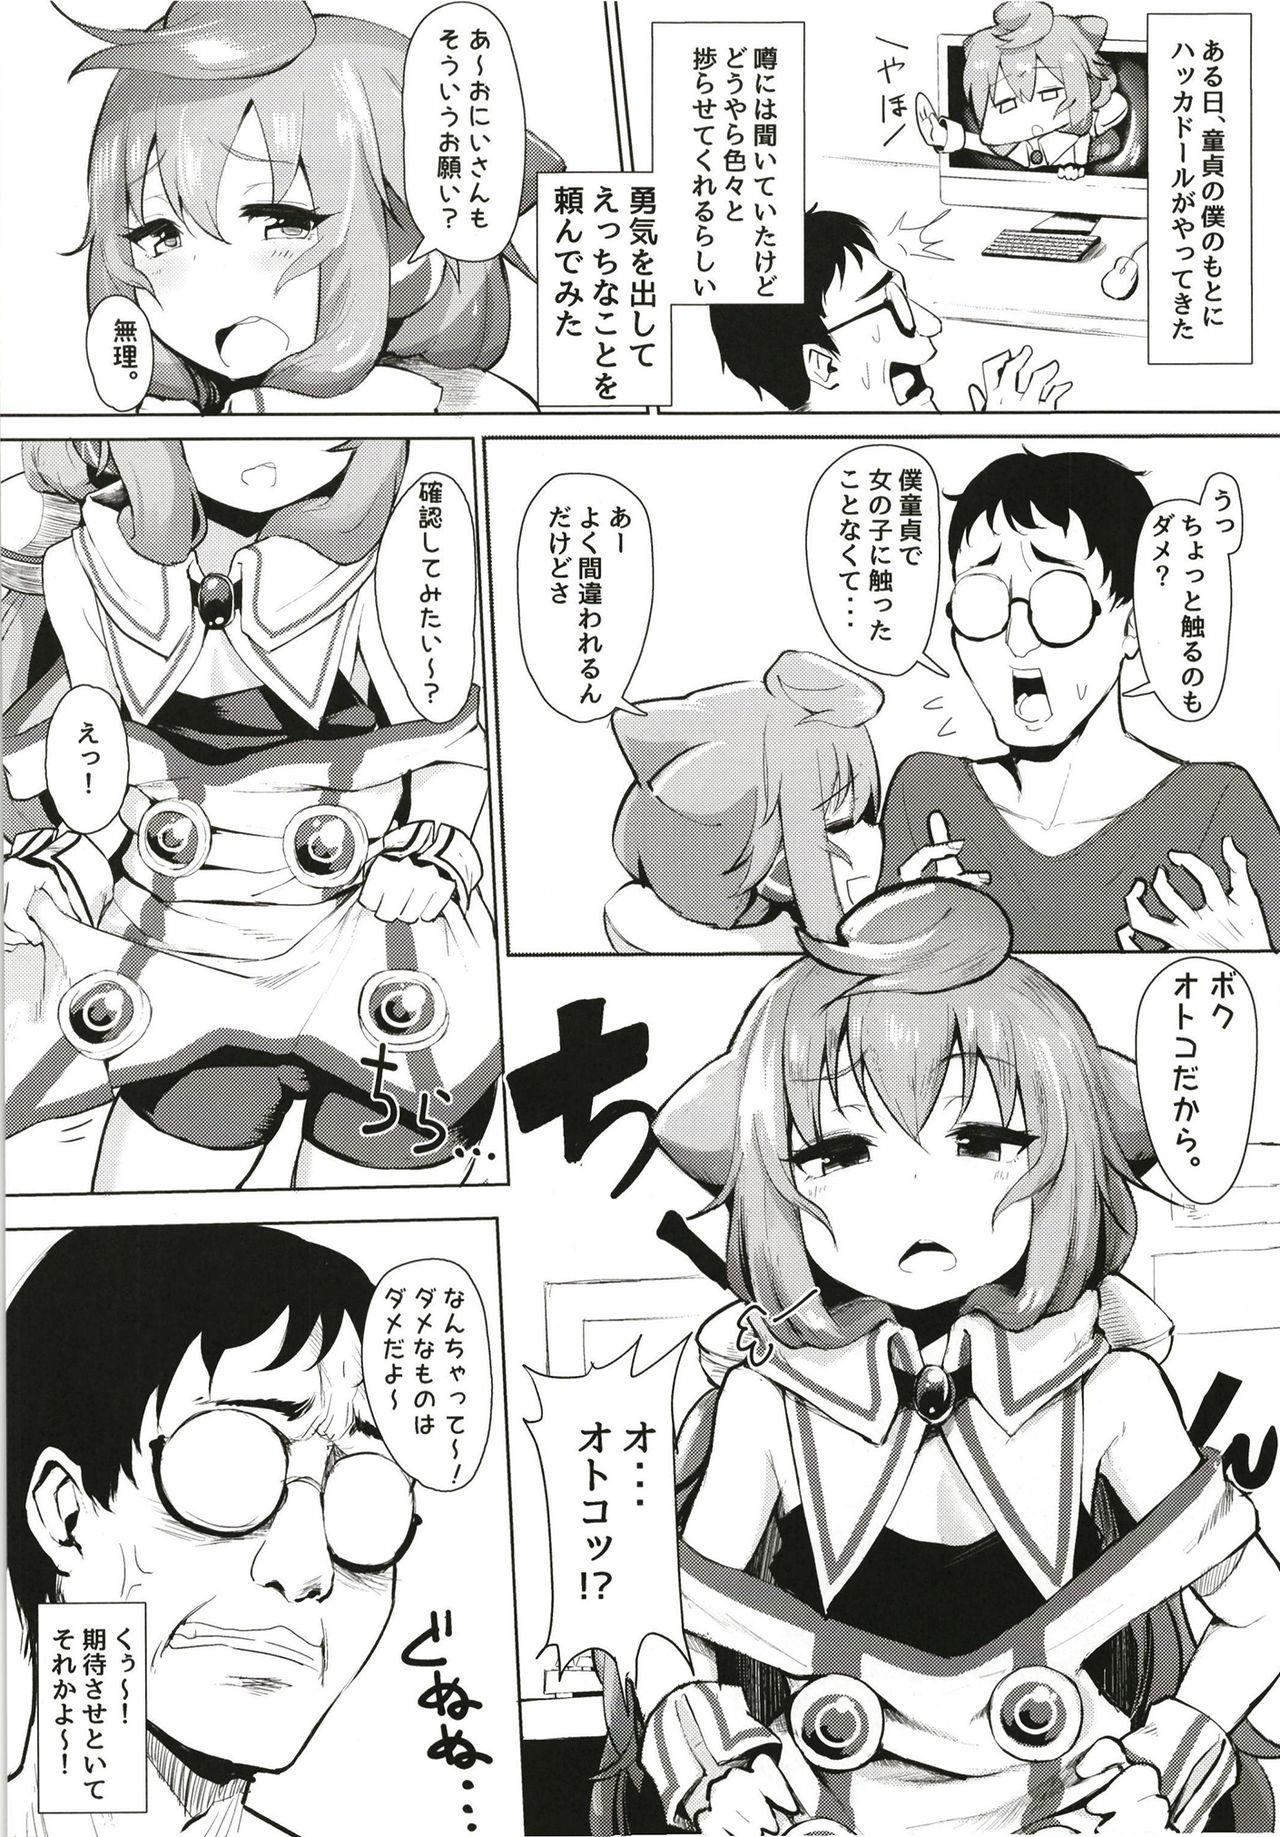 Coed Master, Pakohame Shiyo - Hacka doll Sucking Dicks - Page 4